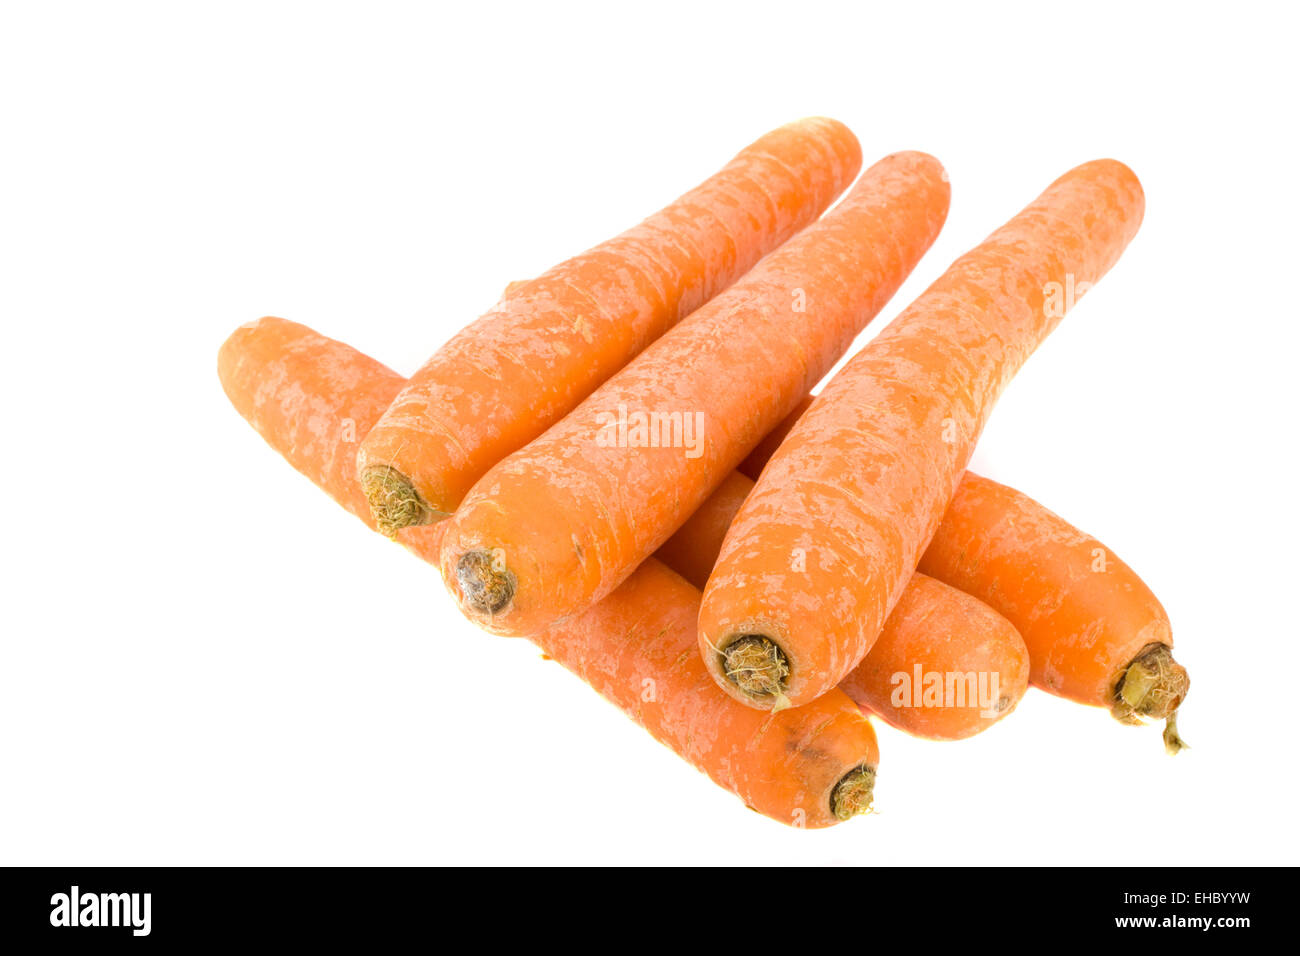 sechs Karotten über weißem Hintergrund Stock Photo